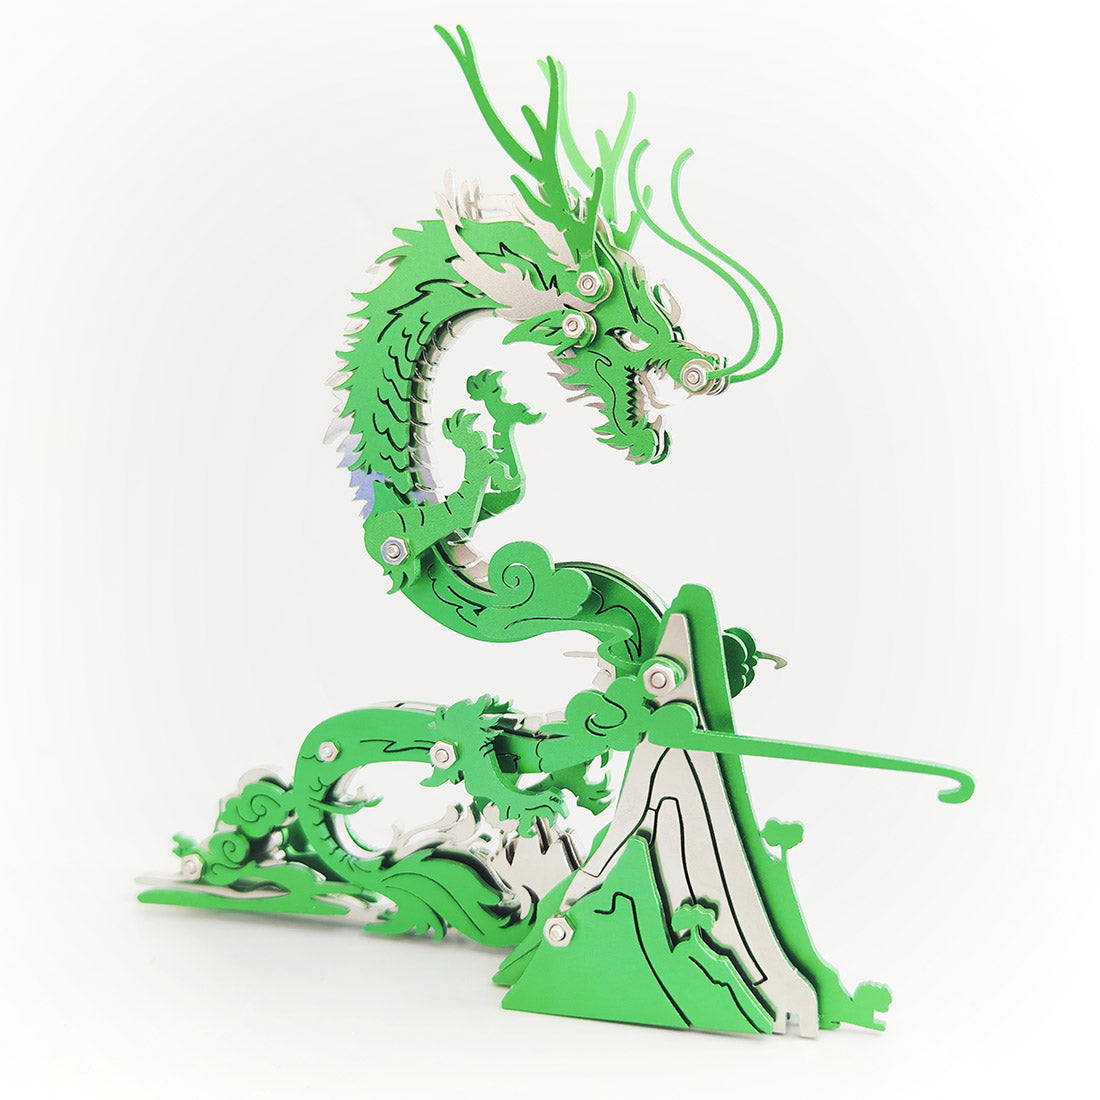 3D Metal Model Assembly DIY Dragon Creative Ornament 90+PCS